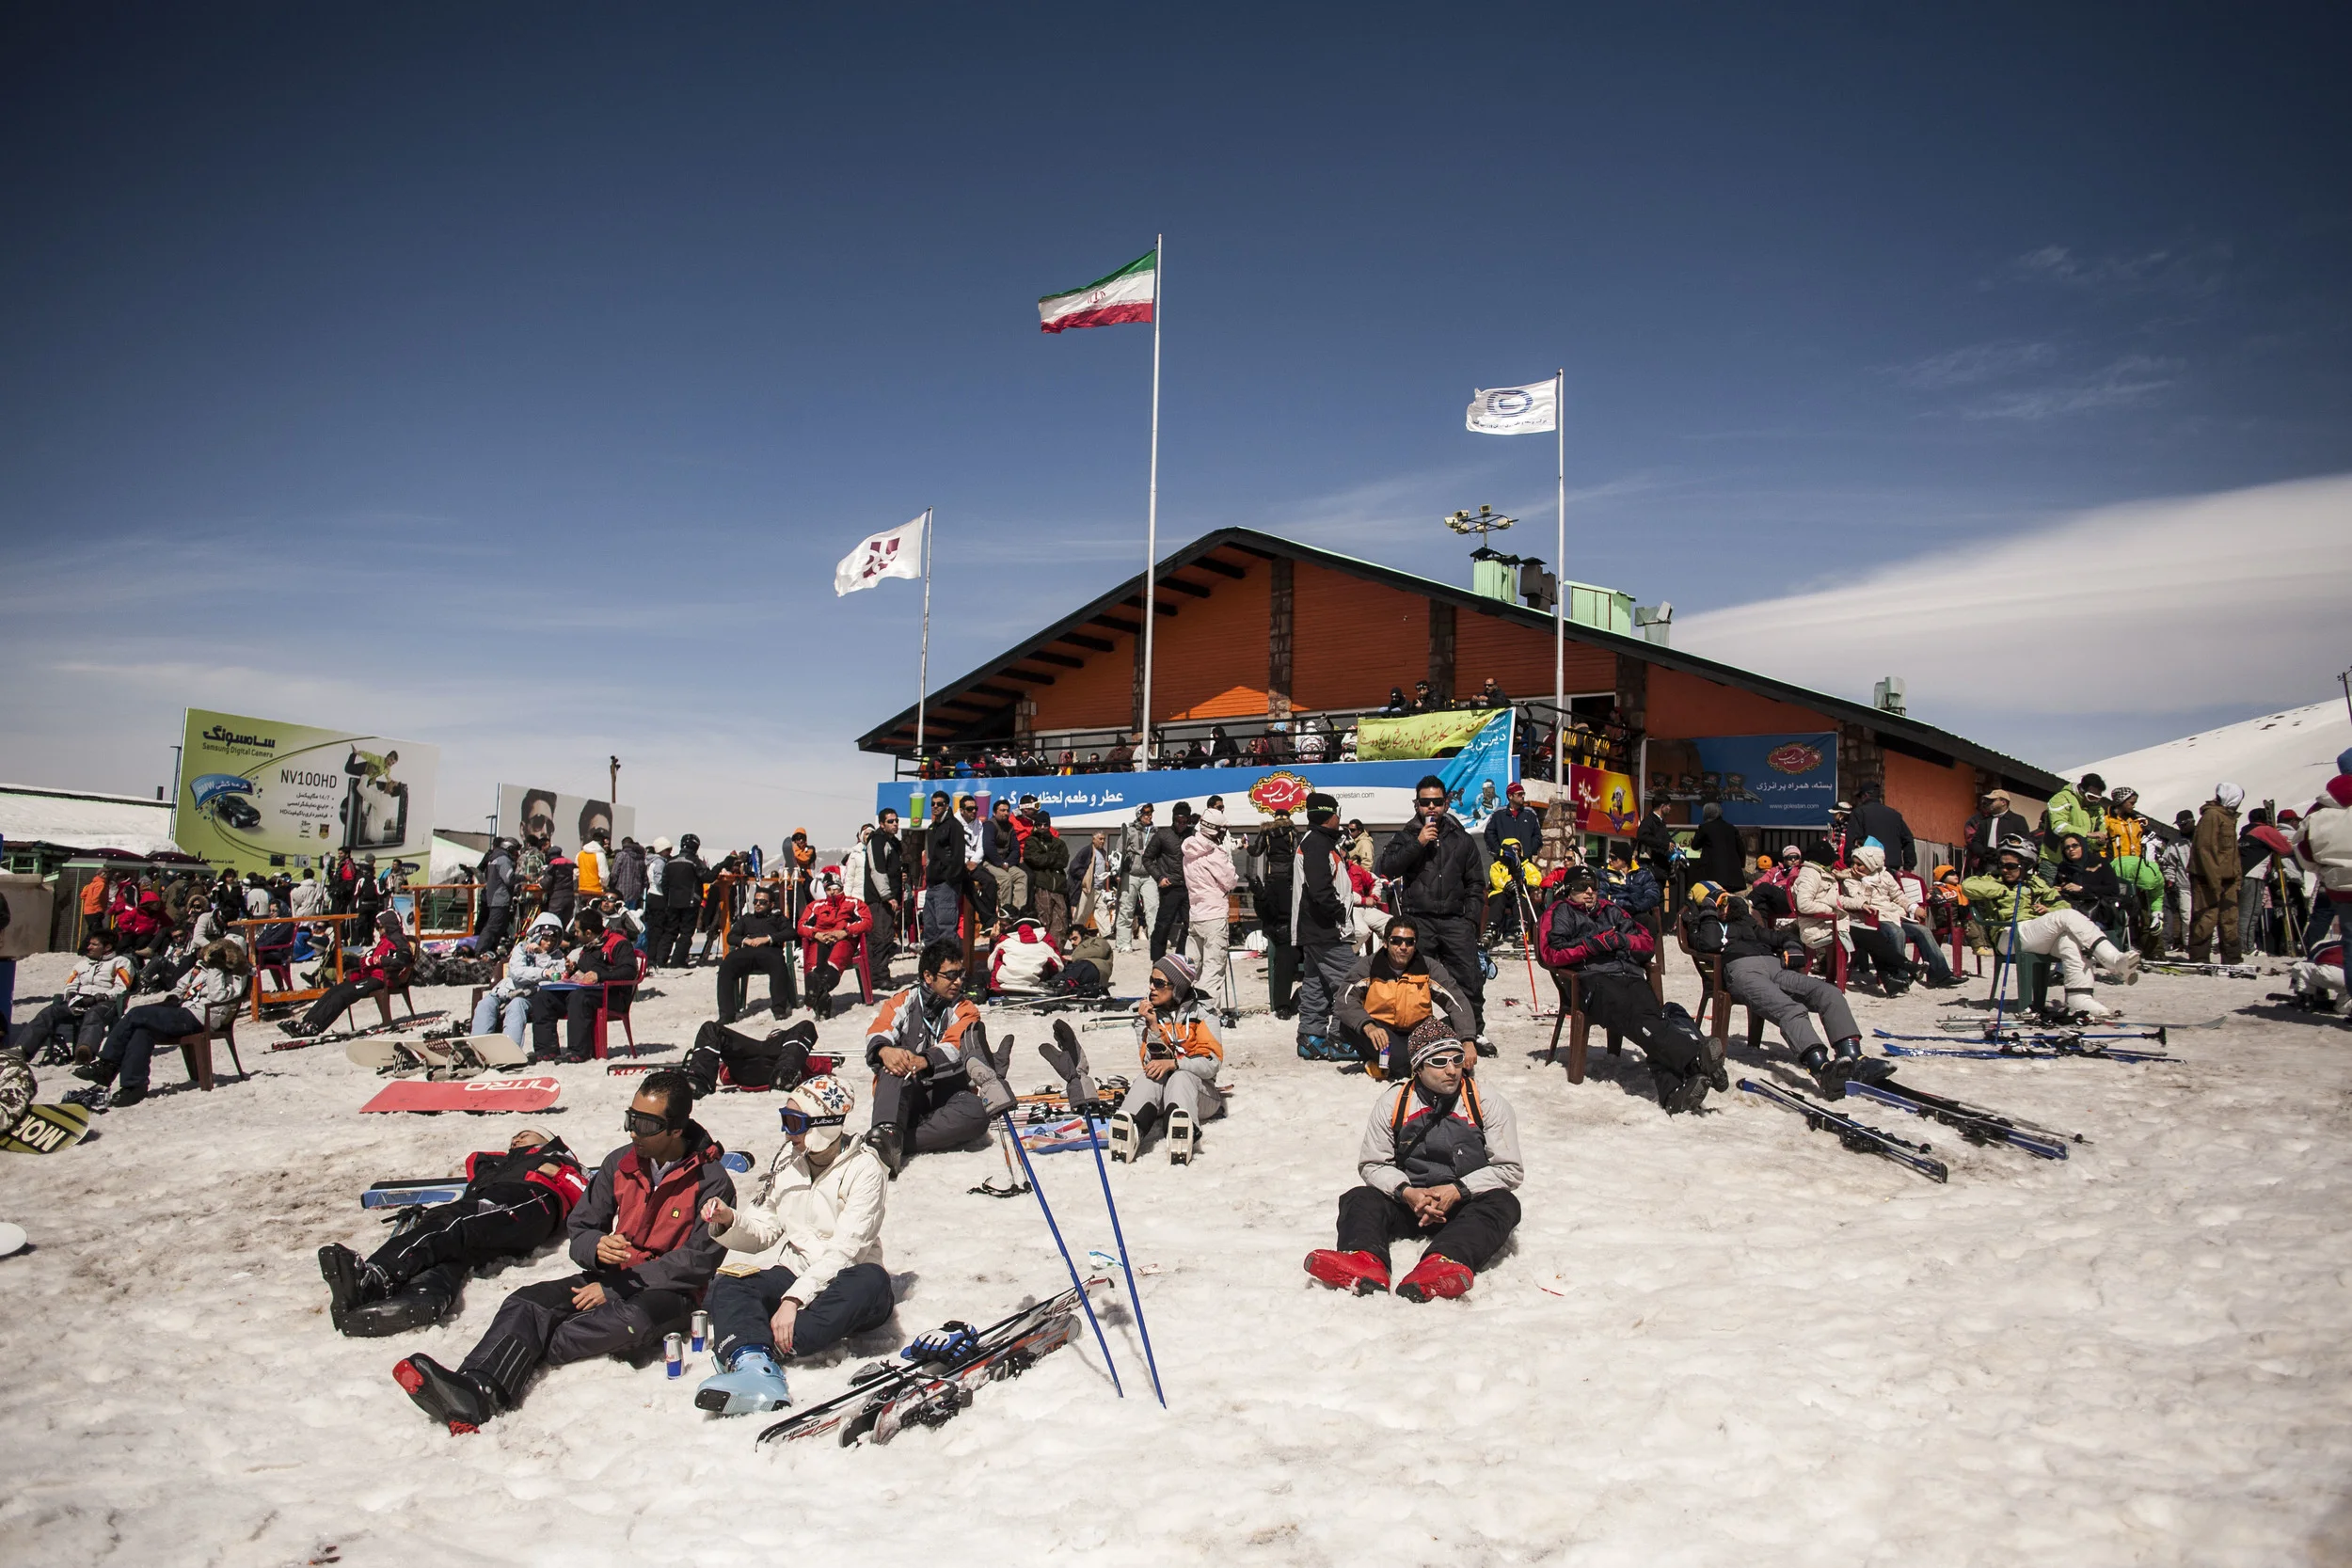 Dizin-ski-resort-the-biggest-ski-resort-Iran